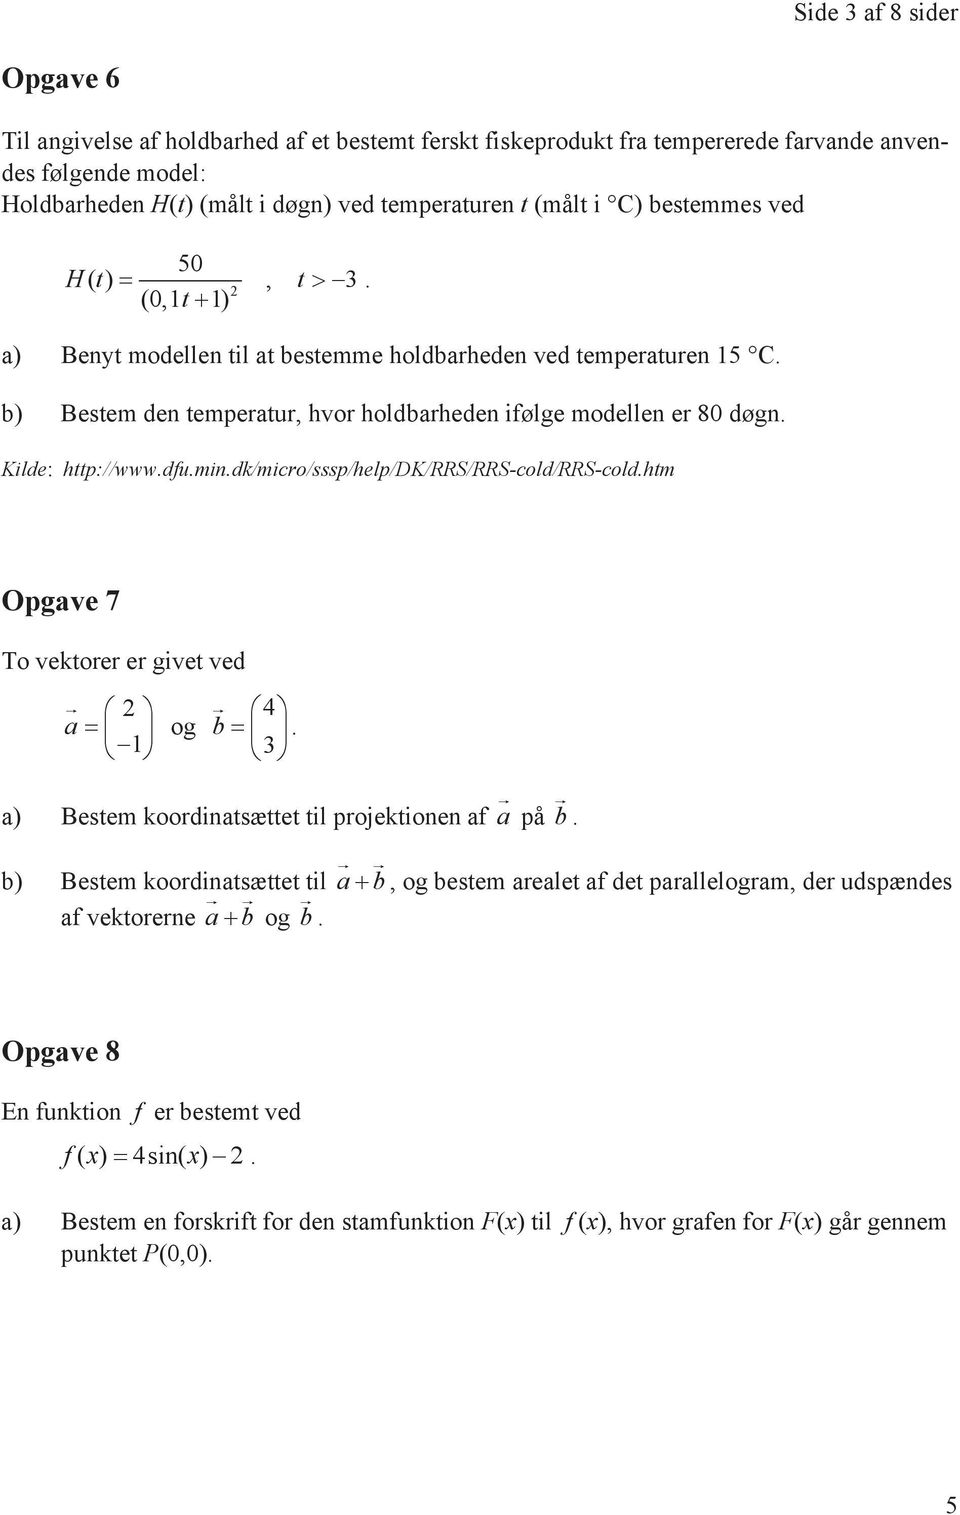 Kilde: http://www.dfu.min.dk/micro/sssp/help/dk/rrs/rrs-cold/rrs-cold.htm Opgave 7 To vektorer er givet ved! 2 a = 1 og! 4 b = 3. a) Bestem koordinatsættet til projektionen af a! på b!